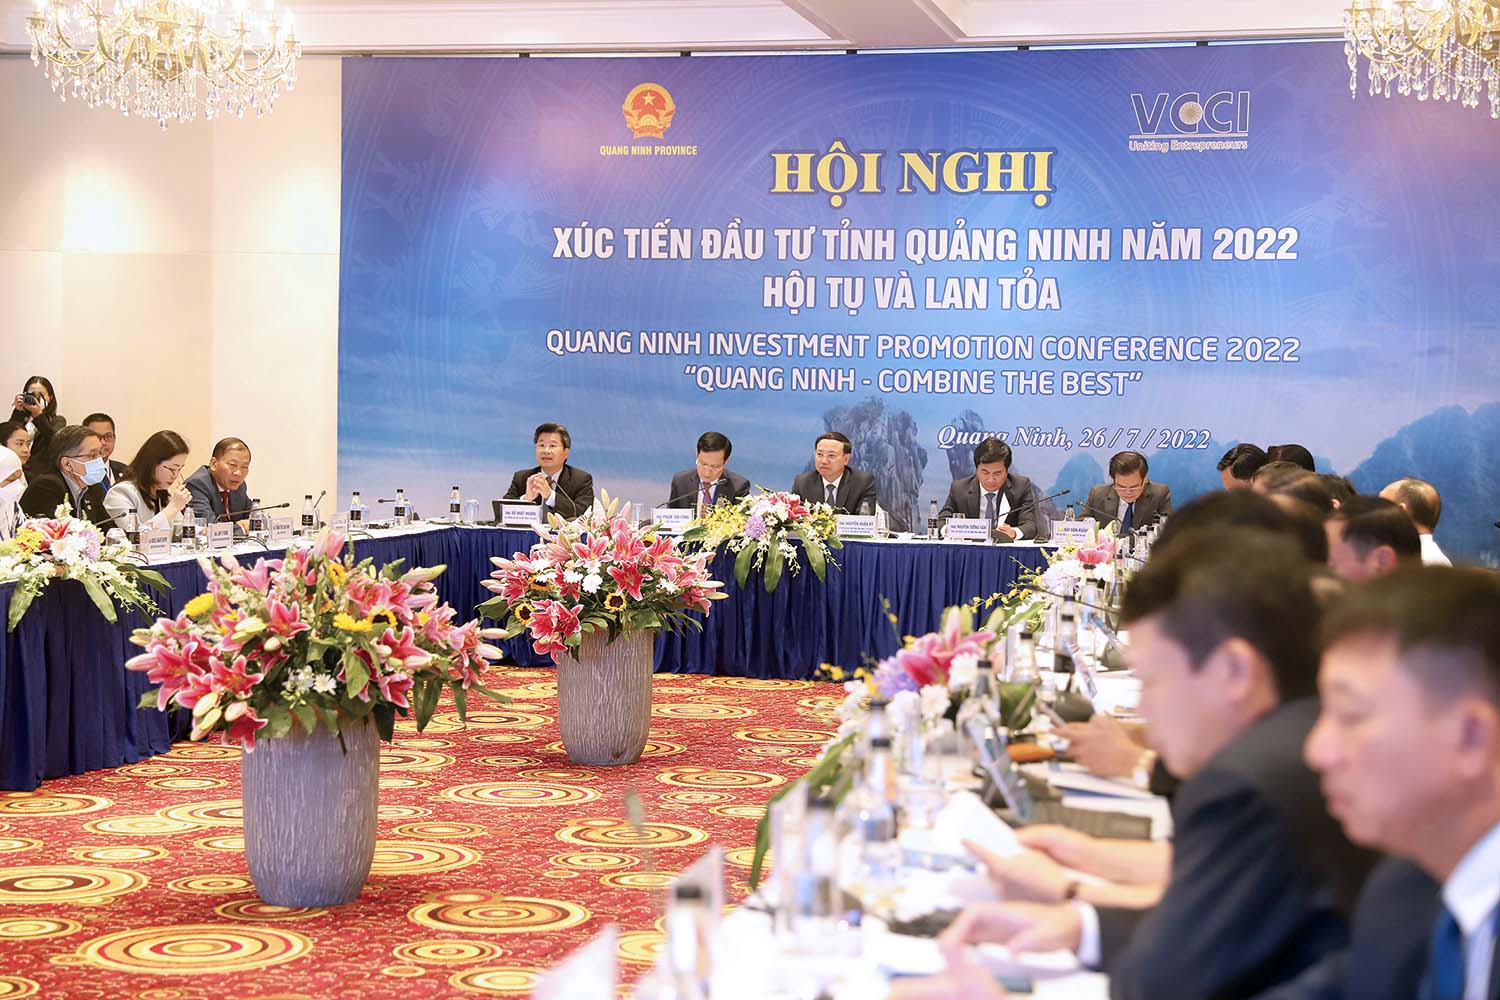 Công tác xúc tiến đầu tư của tỉnh Quảng Ninh ngày càng được đổi mới để nâng cao hiệu quả. Trong ảnh: Hội nghị Xúc tiến đầu tư tỉnh Quảng Ninh năm 2022  Ảnh: Thu Lê